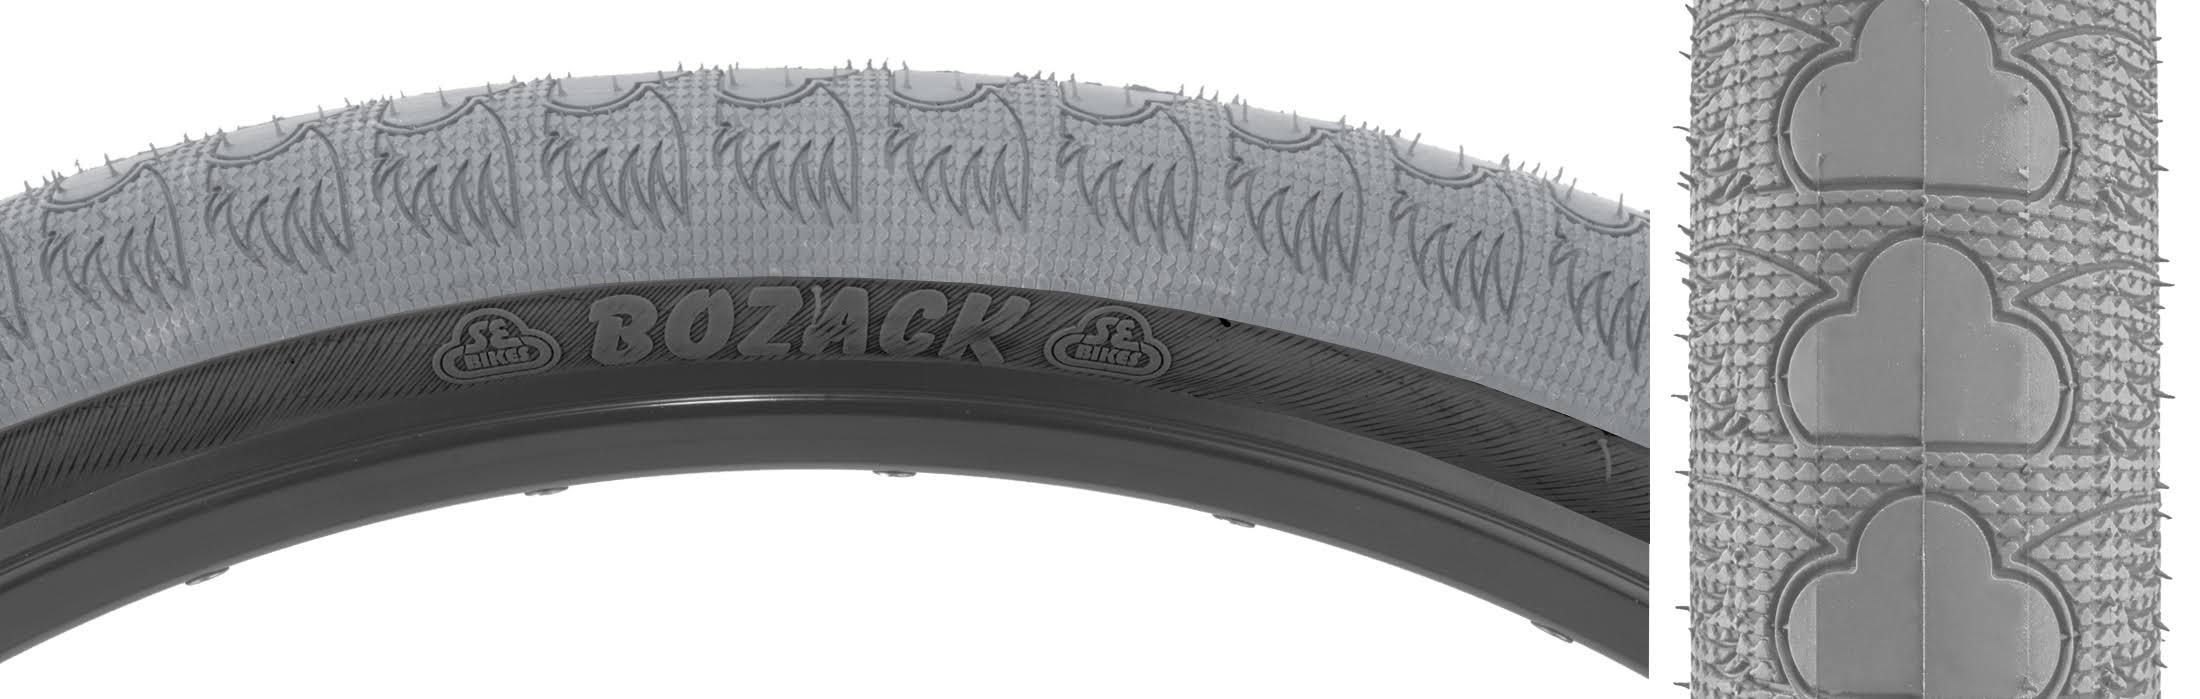 SE Bikes Bozack BMX Cruiser Tire 24x2.4 Grey Black Wire Bead 27TPI MPC 24